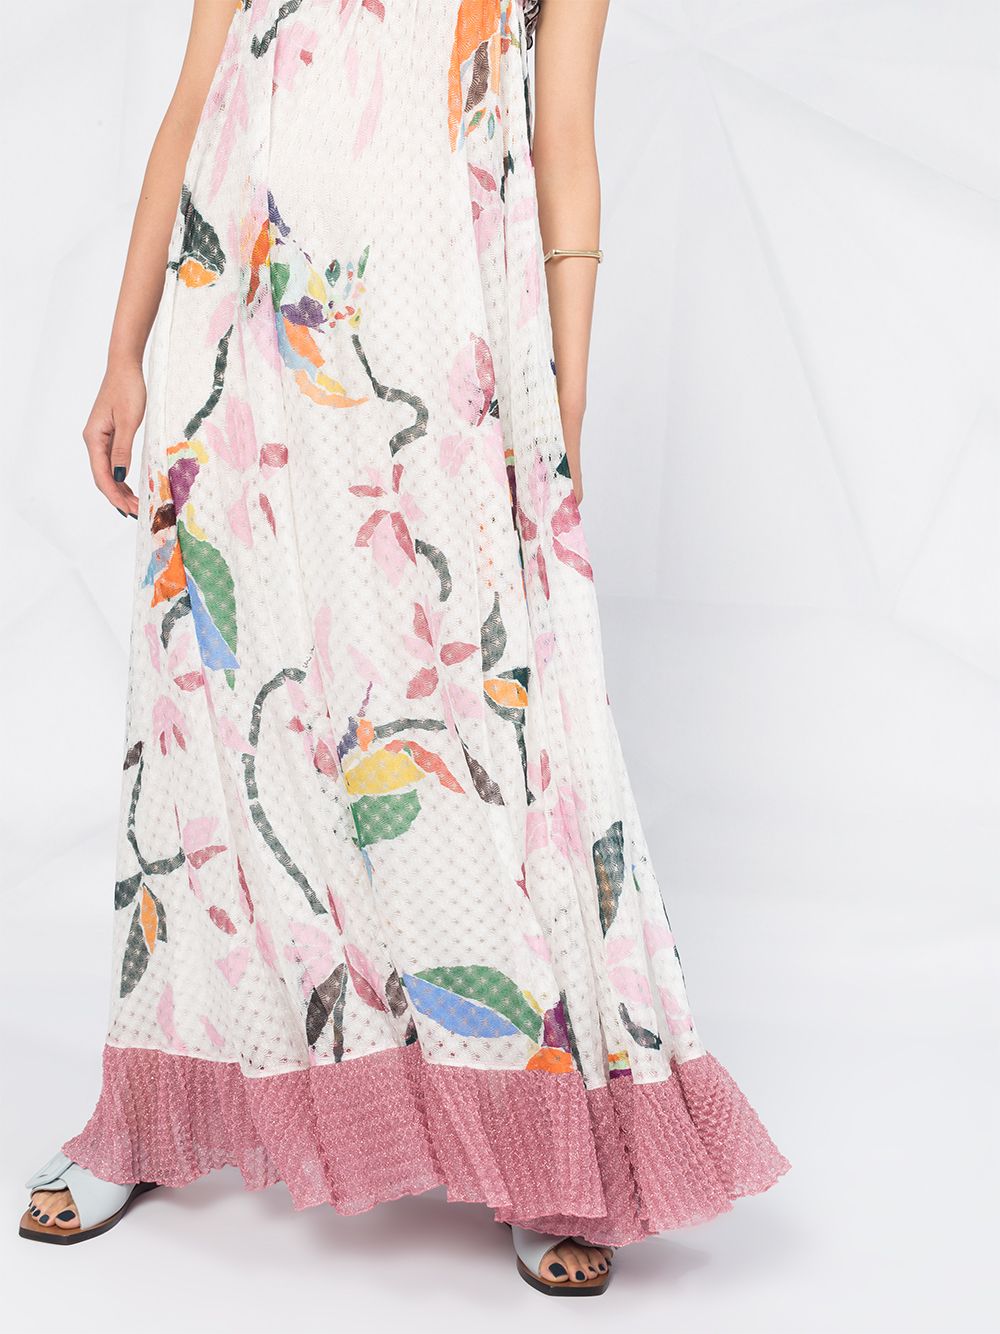 фото Missoni платье макси с оборками и цветочным принтом